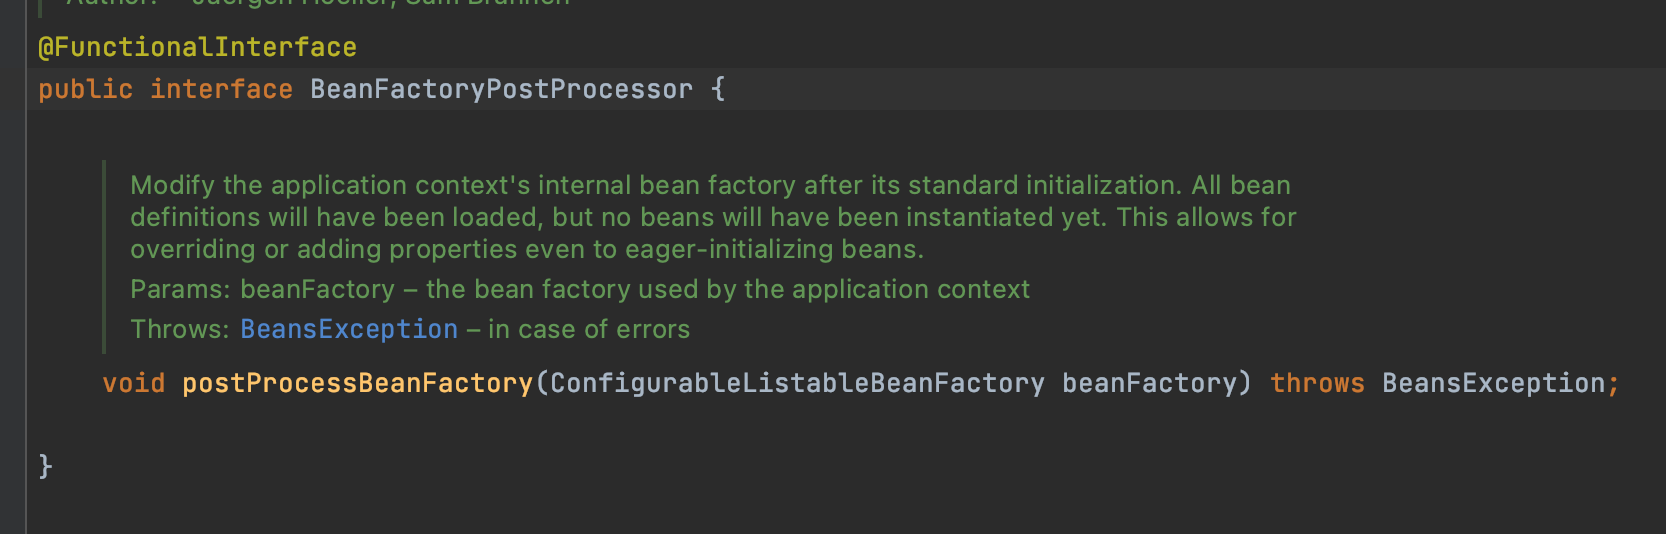 BeanFactoryPostProcessor